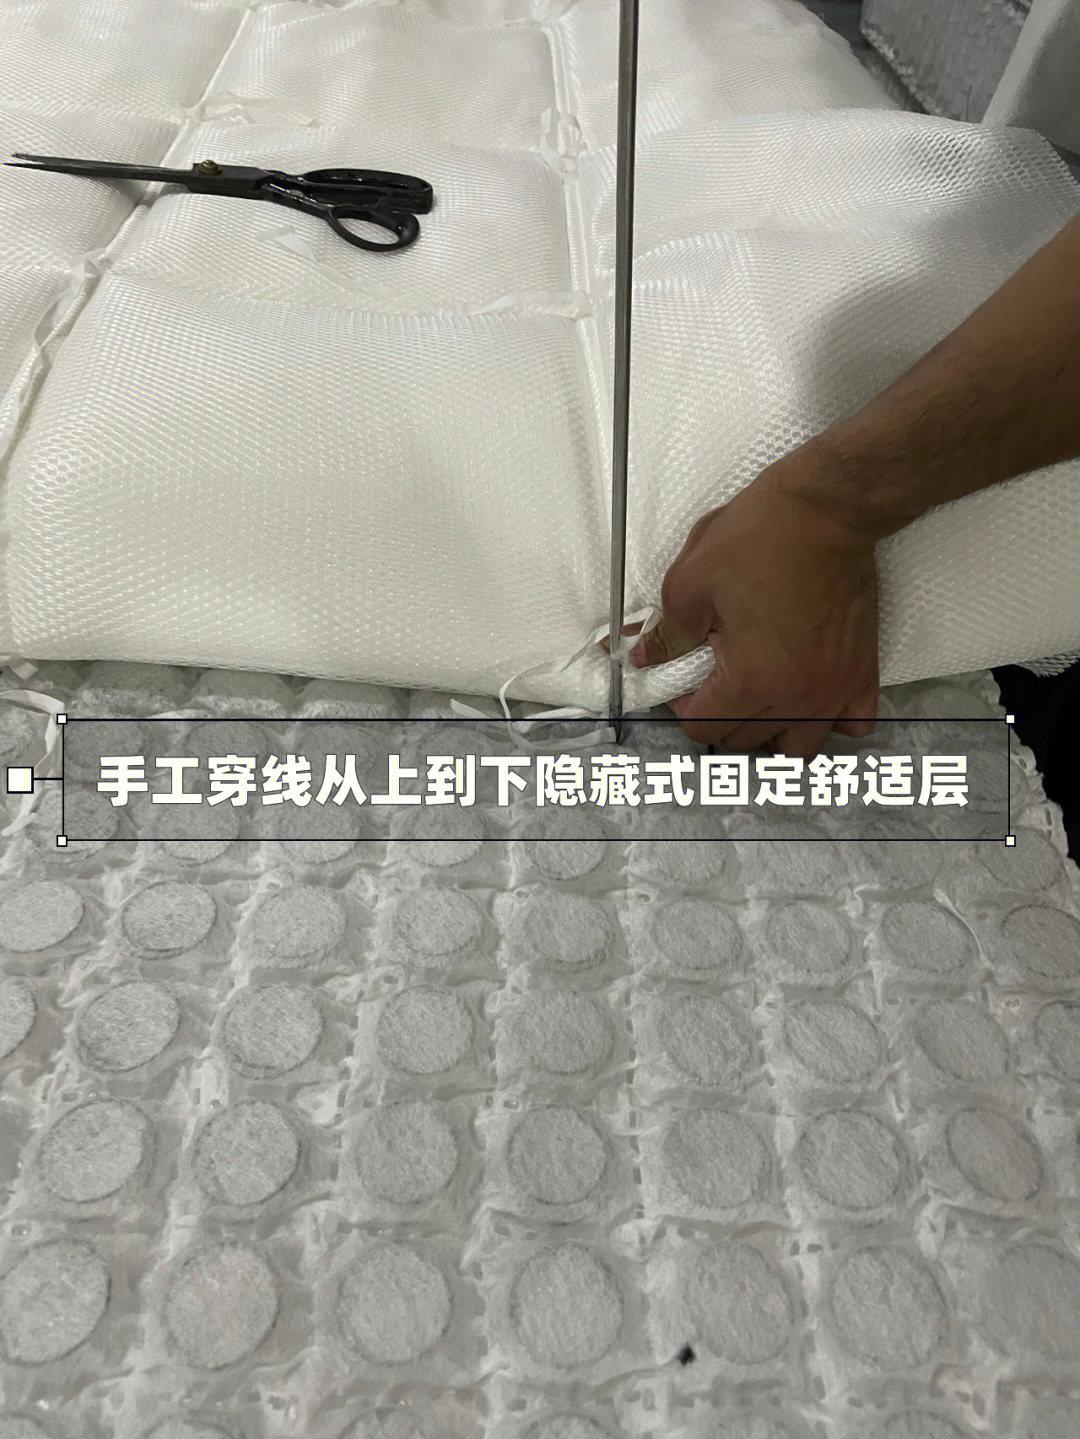 如何废物利用自制床垫图片